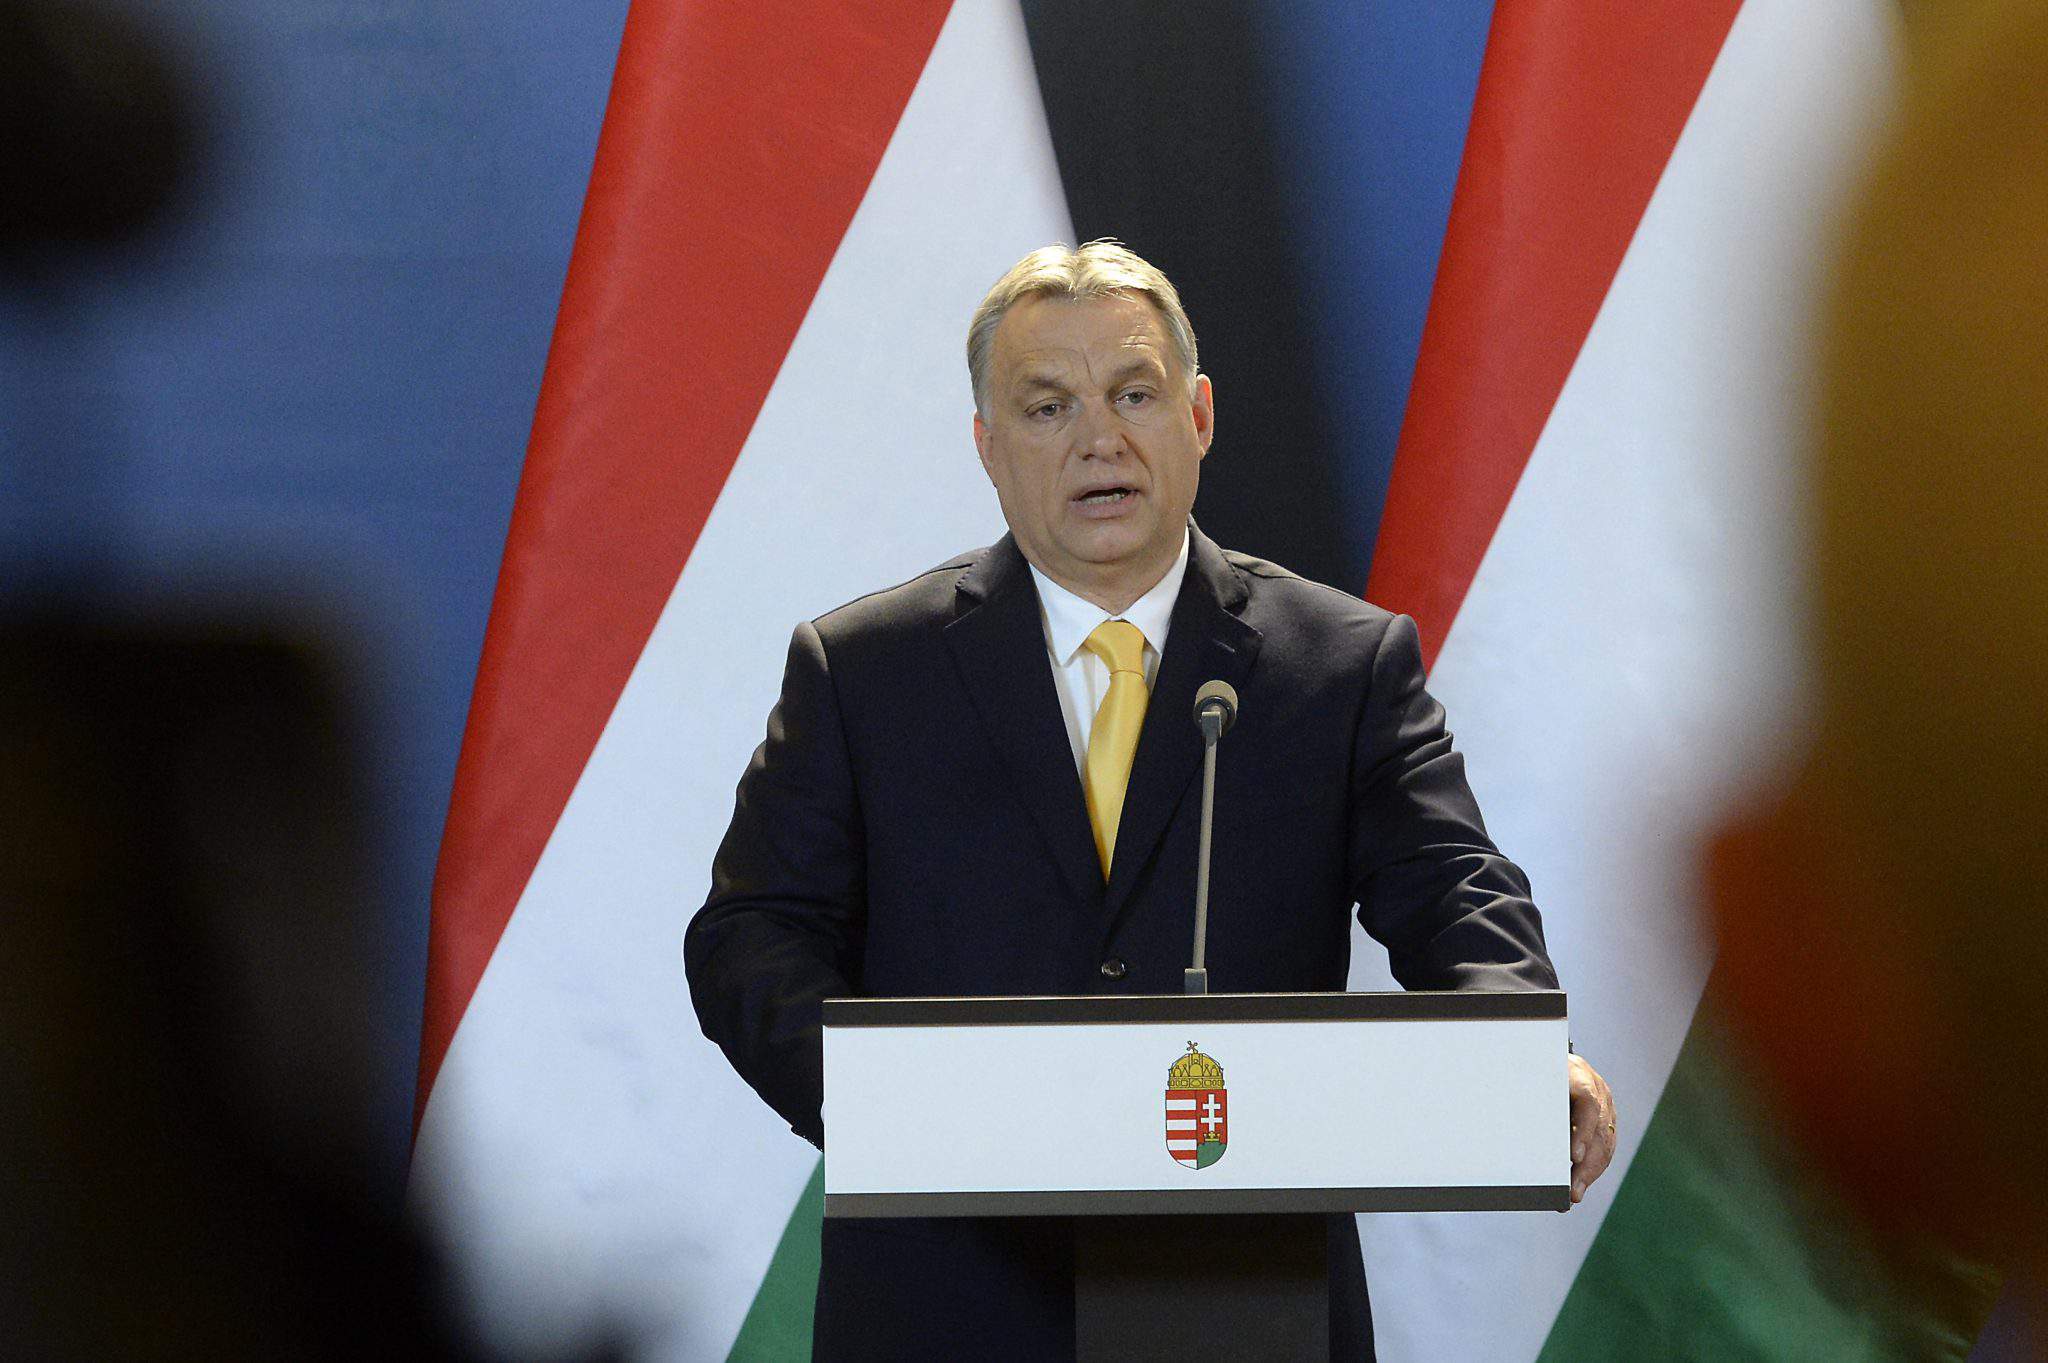 أوربان فيكتور رئيس وزراء المجر